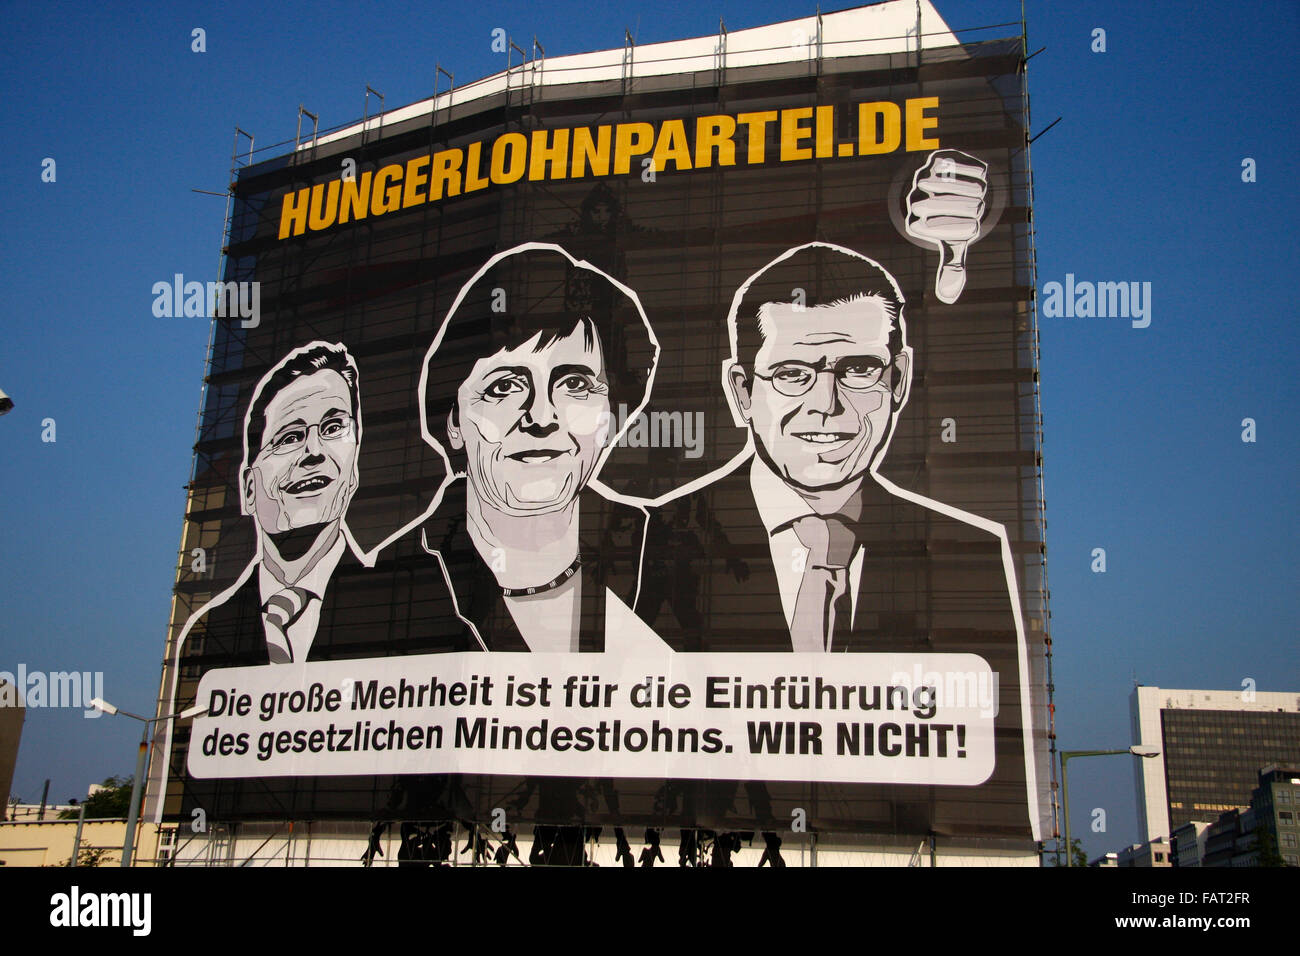 Hungerlohnpartei.de: Guido Westerwelle, Angela Merkel, Karl-Theodor zu Guttenberg  - Wahlplakate zur Bundestagswahl 2009, 21. Se Stock Photo